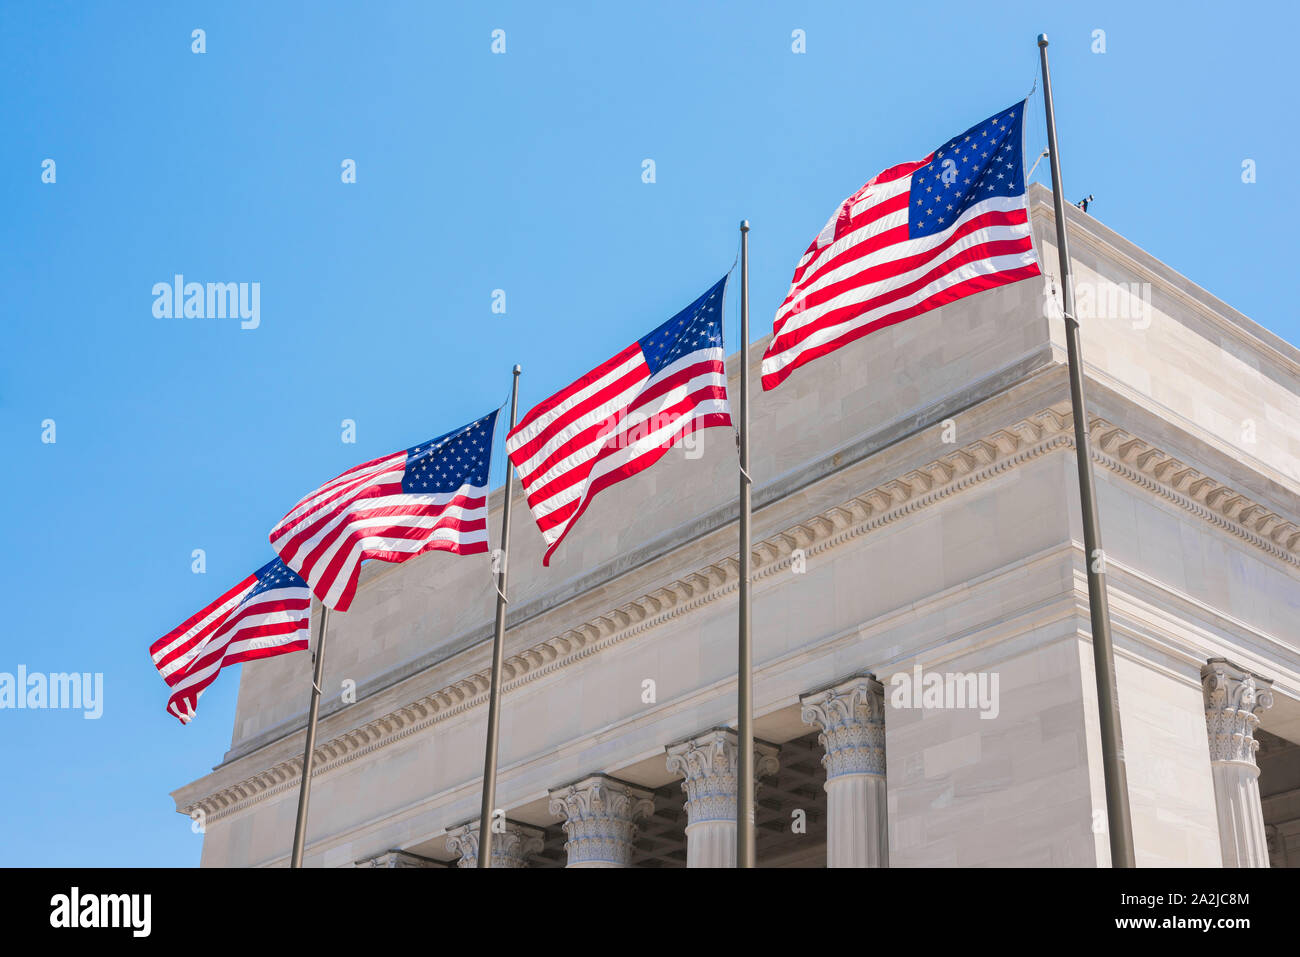 US-Justiz, Blick auf vier US-Nationalflaggen vor einem Gebäude des amerikanischen Gerichtsgebäudes im neoklassizistischen Stil. Stockfoto